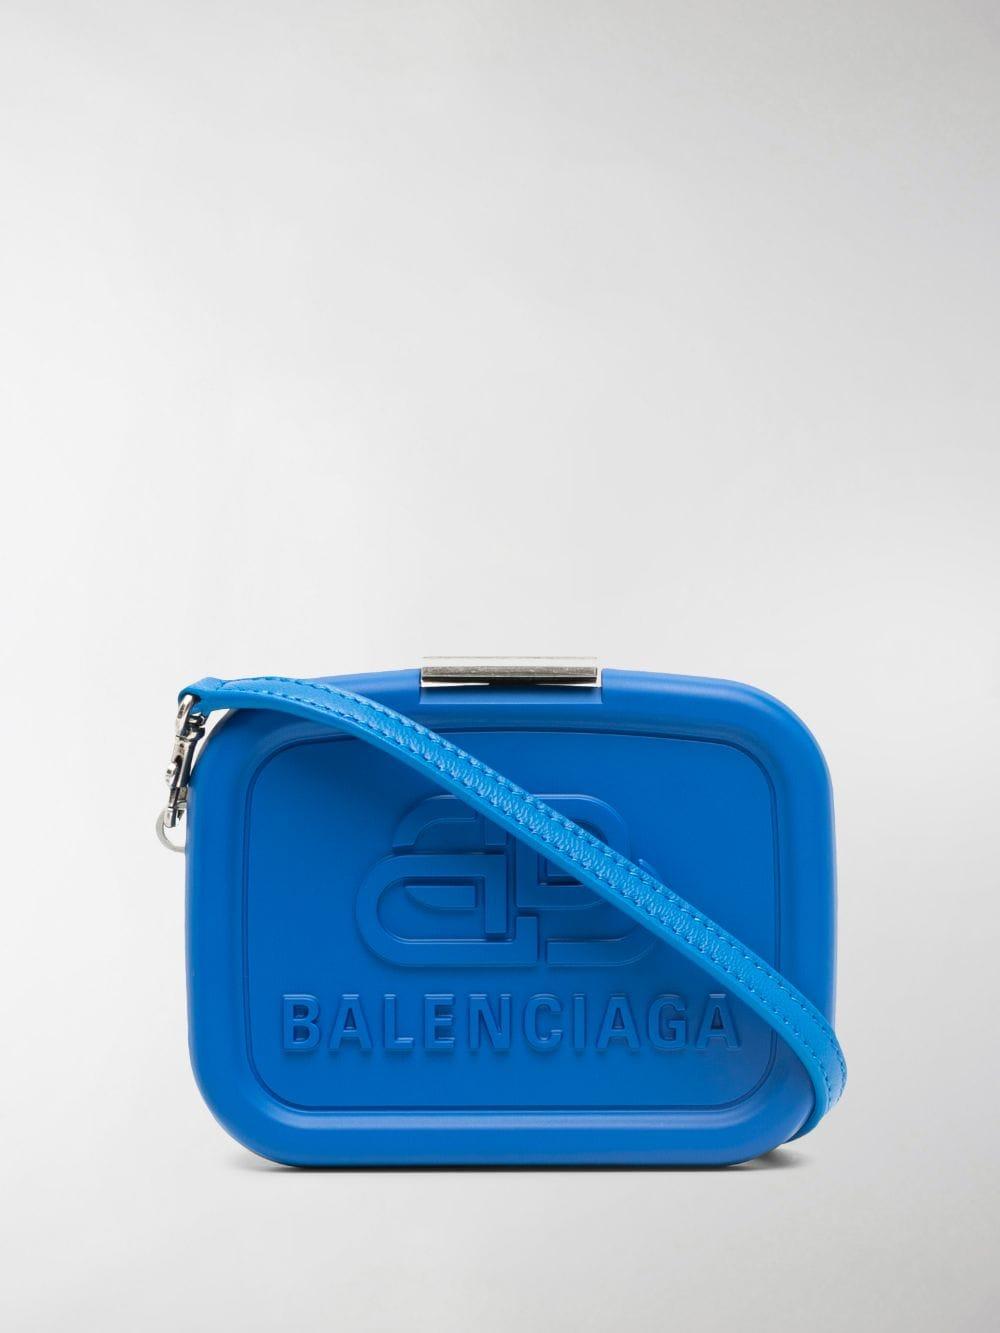 Balenciaga Lunch Box Mini Leather Case Bag in Blue - Lyst